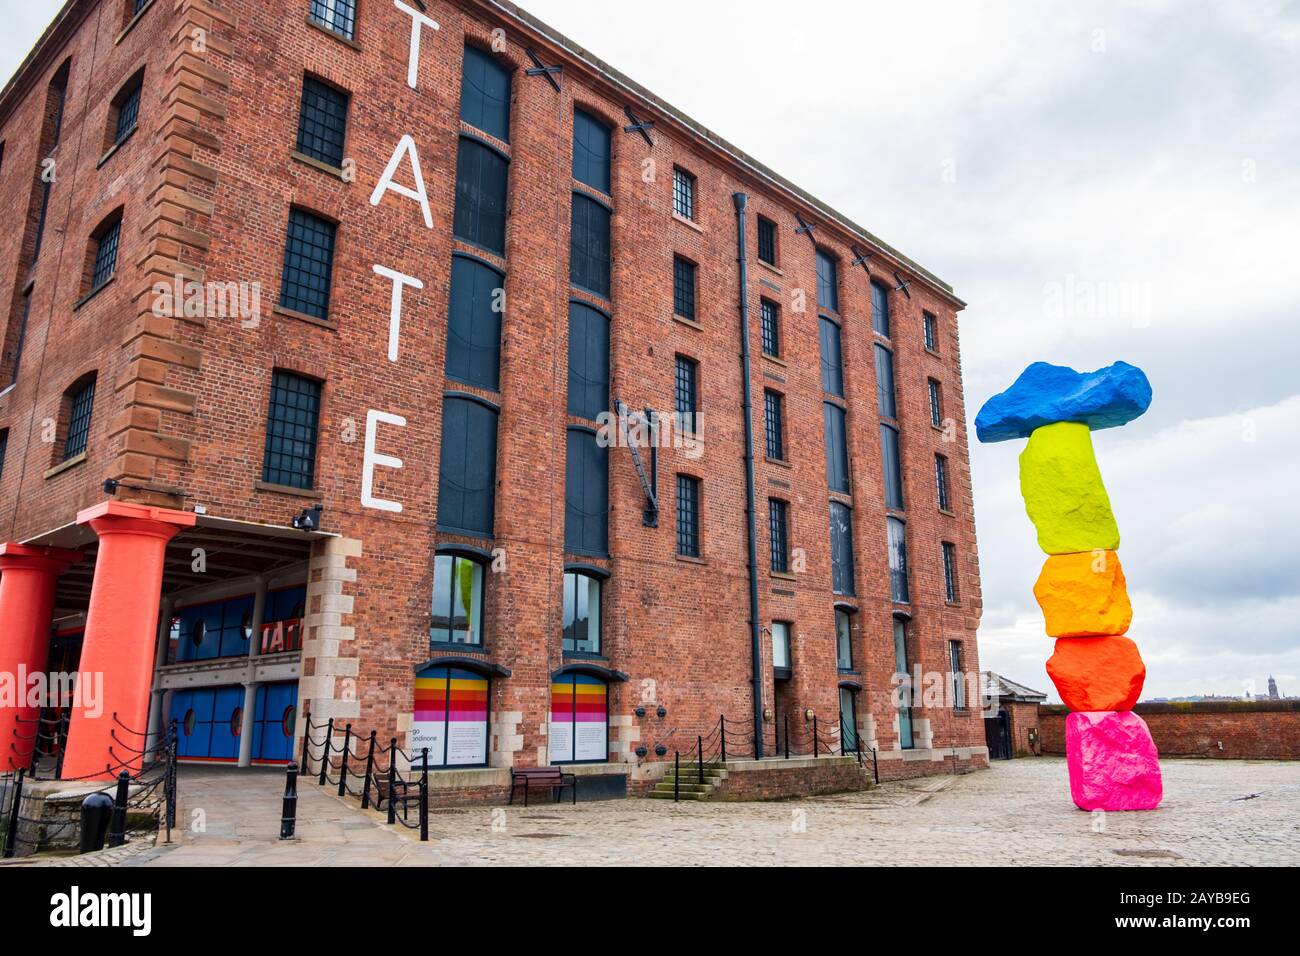 Esterno della galleria d'arte Tate Liverpool nell'area Albert Dock di Liverpool, Merseyside, con una scultura di Ugo Rondinone di nome Foto Stock